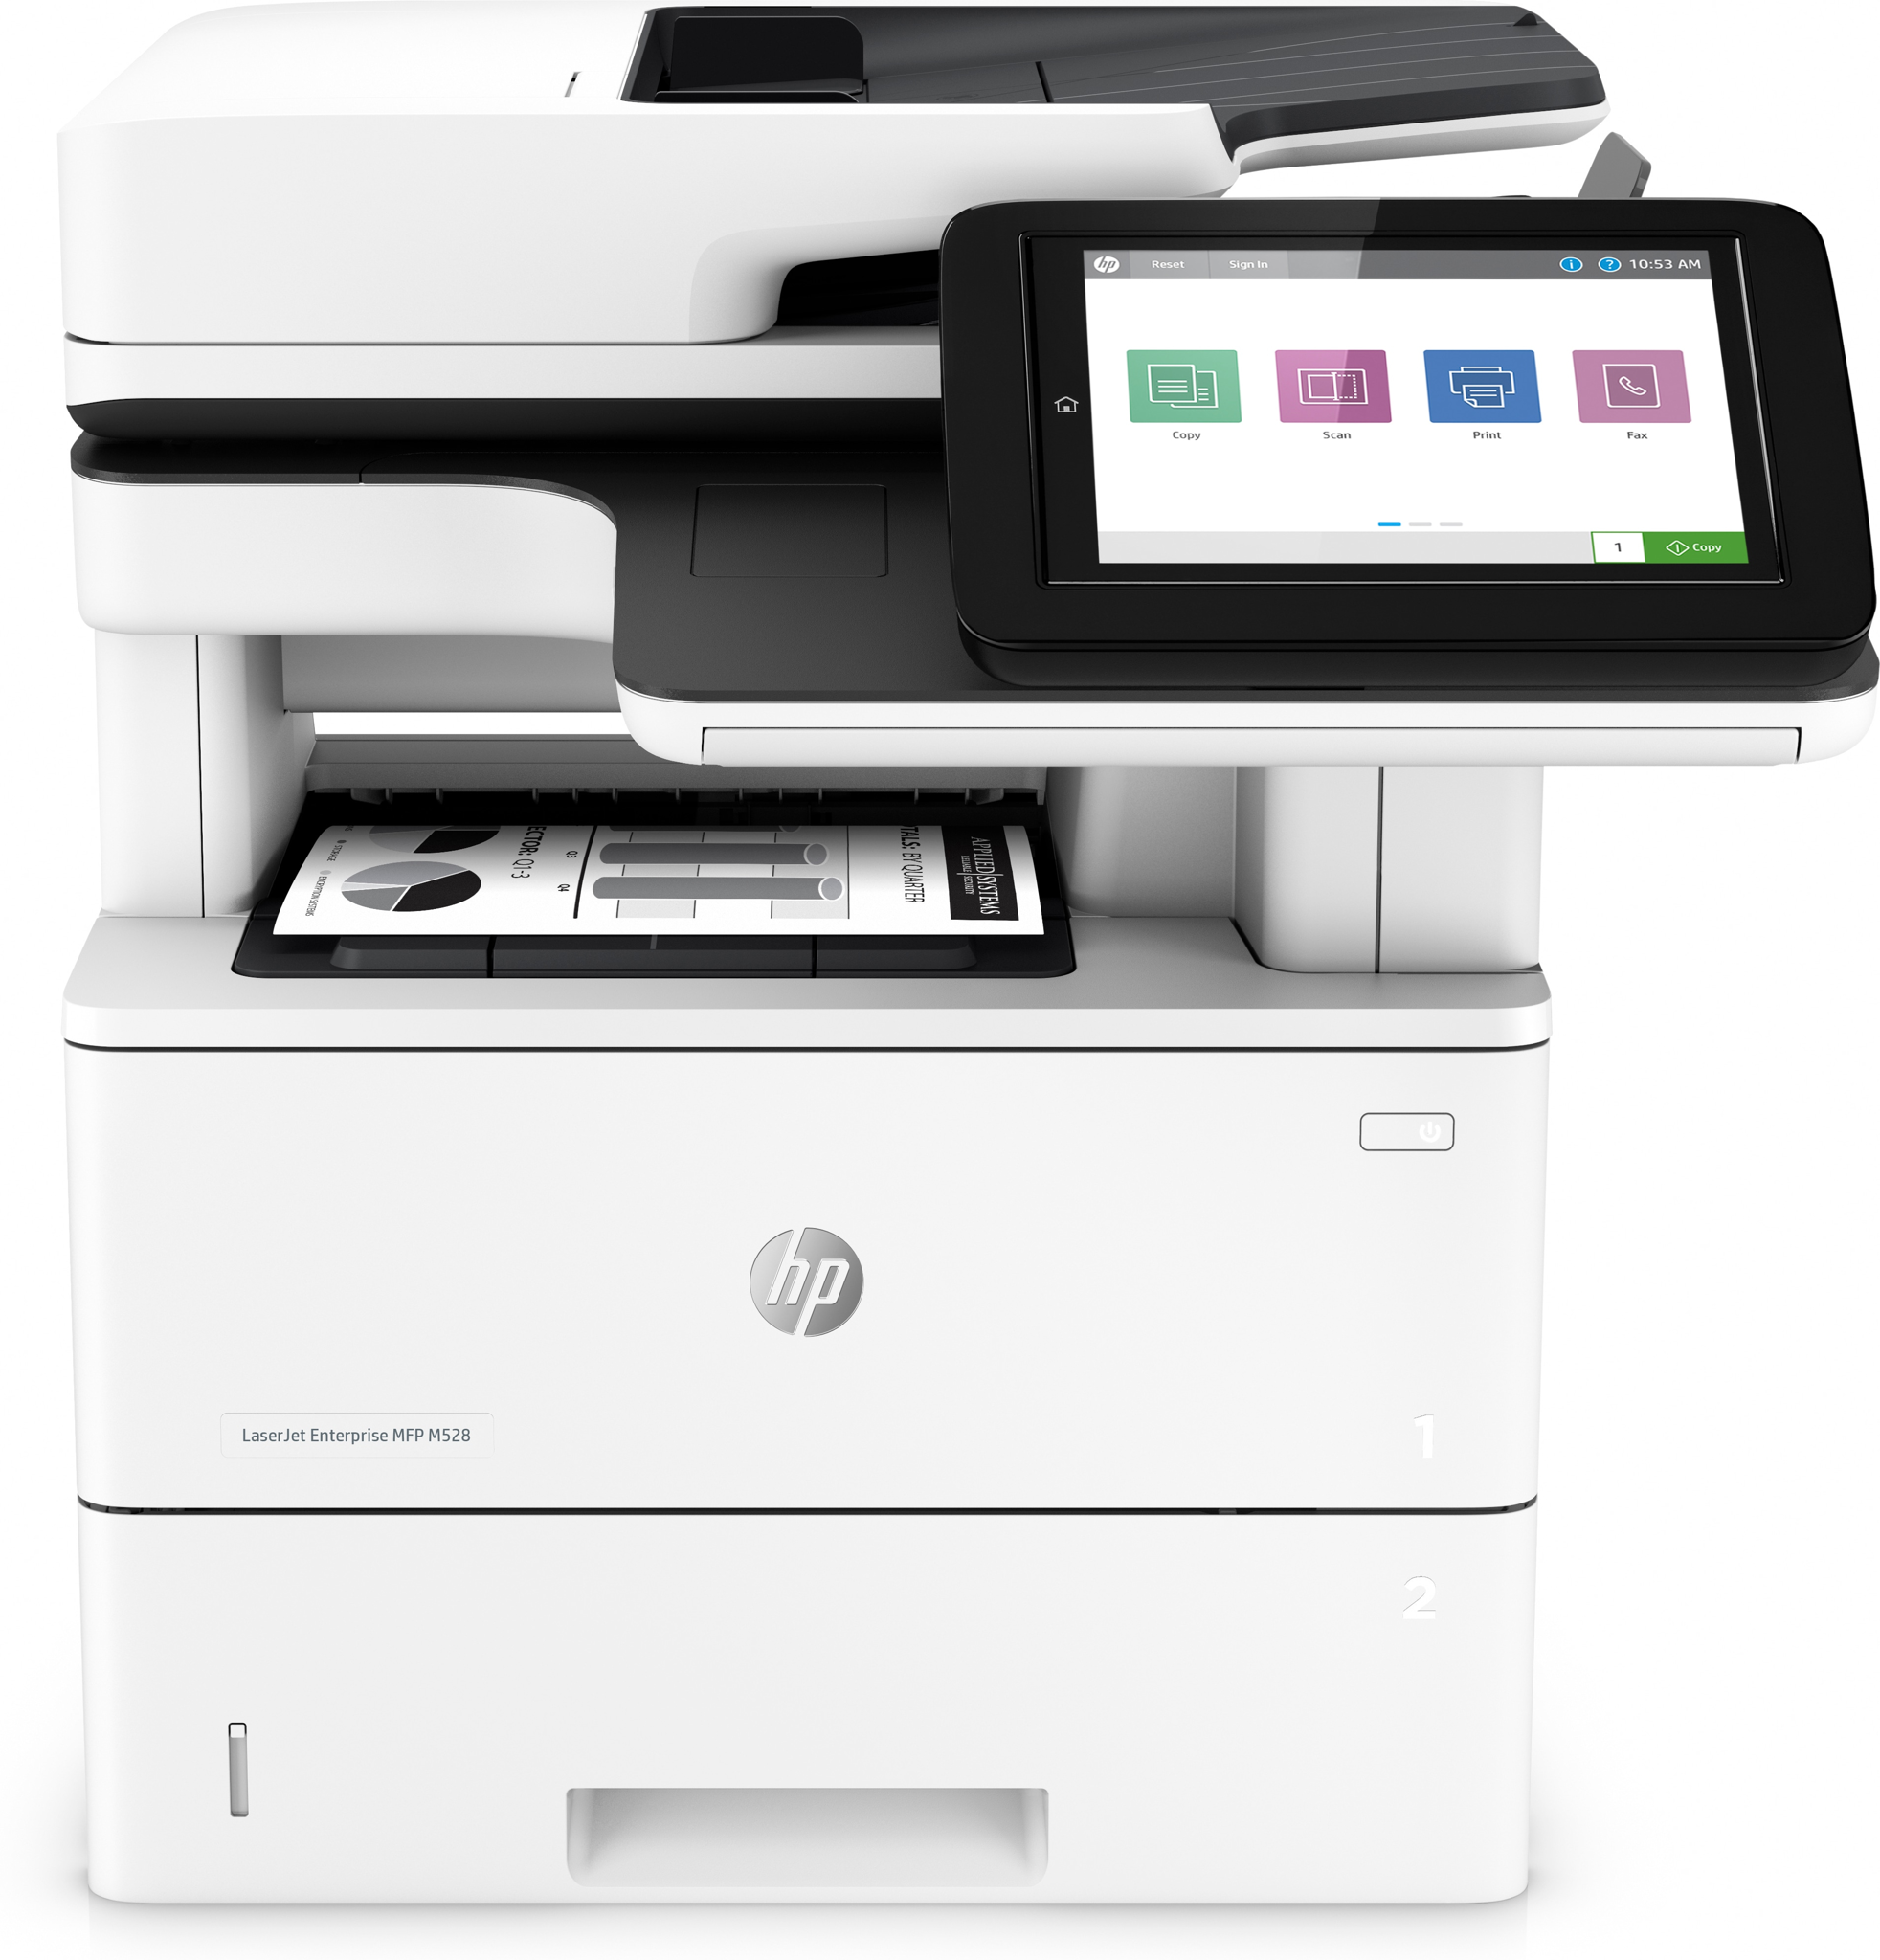 Bild von HP LaserJet Enterprise MFP M528dn - Drucken - Kopieren - Scannen und optionales Faxen - Drucken über die USB-Schnittstelle an der Vorderseite des Druckers; Scannen an E-Mail; Beidseitiger Druck; Beidseitiges Scannen - Laser - Monodruck - 1200 x 1200 DPI - A4